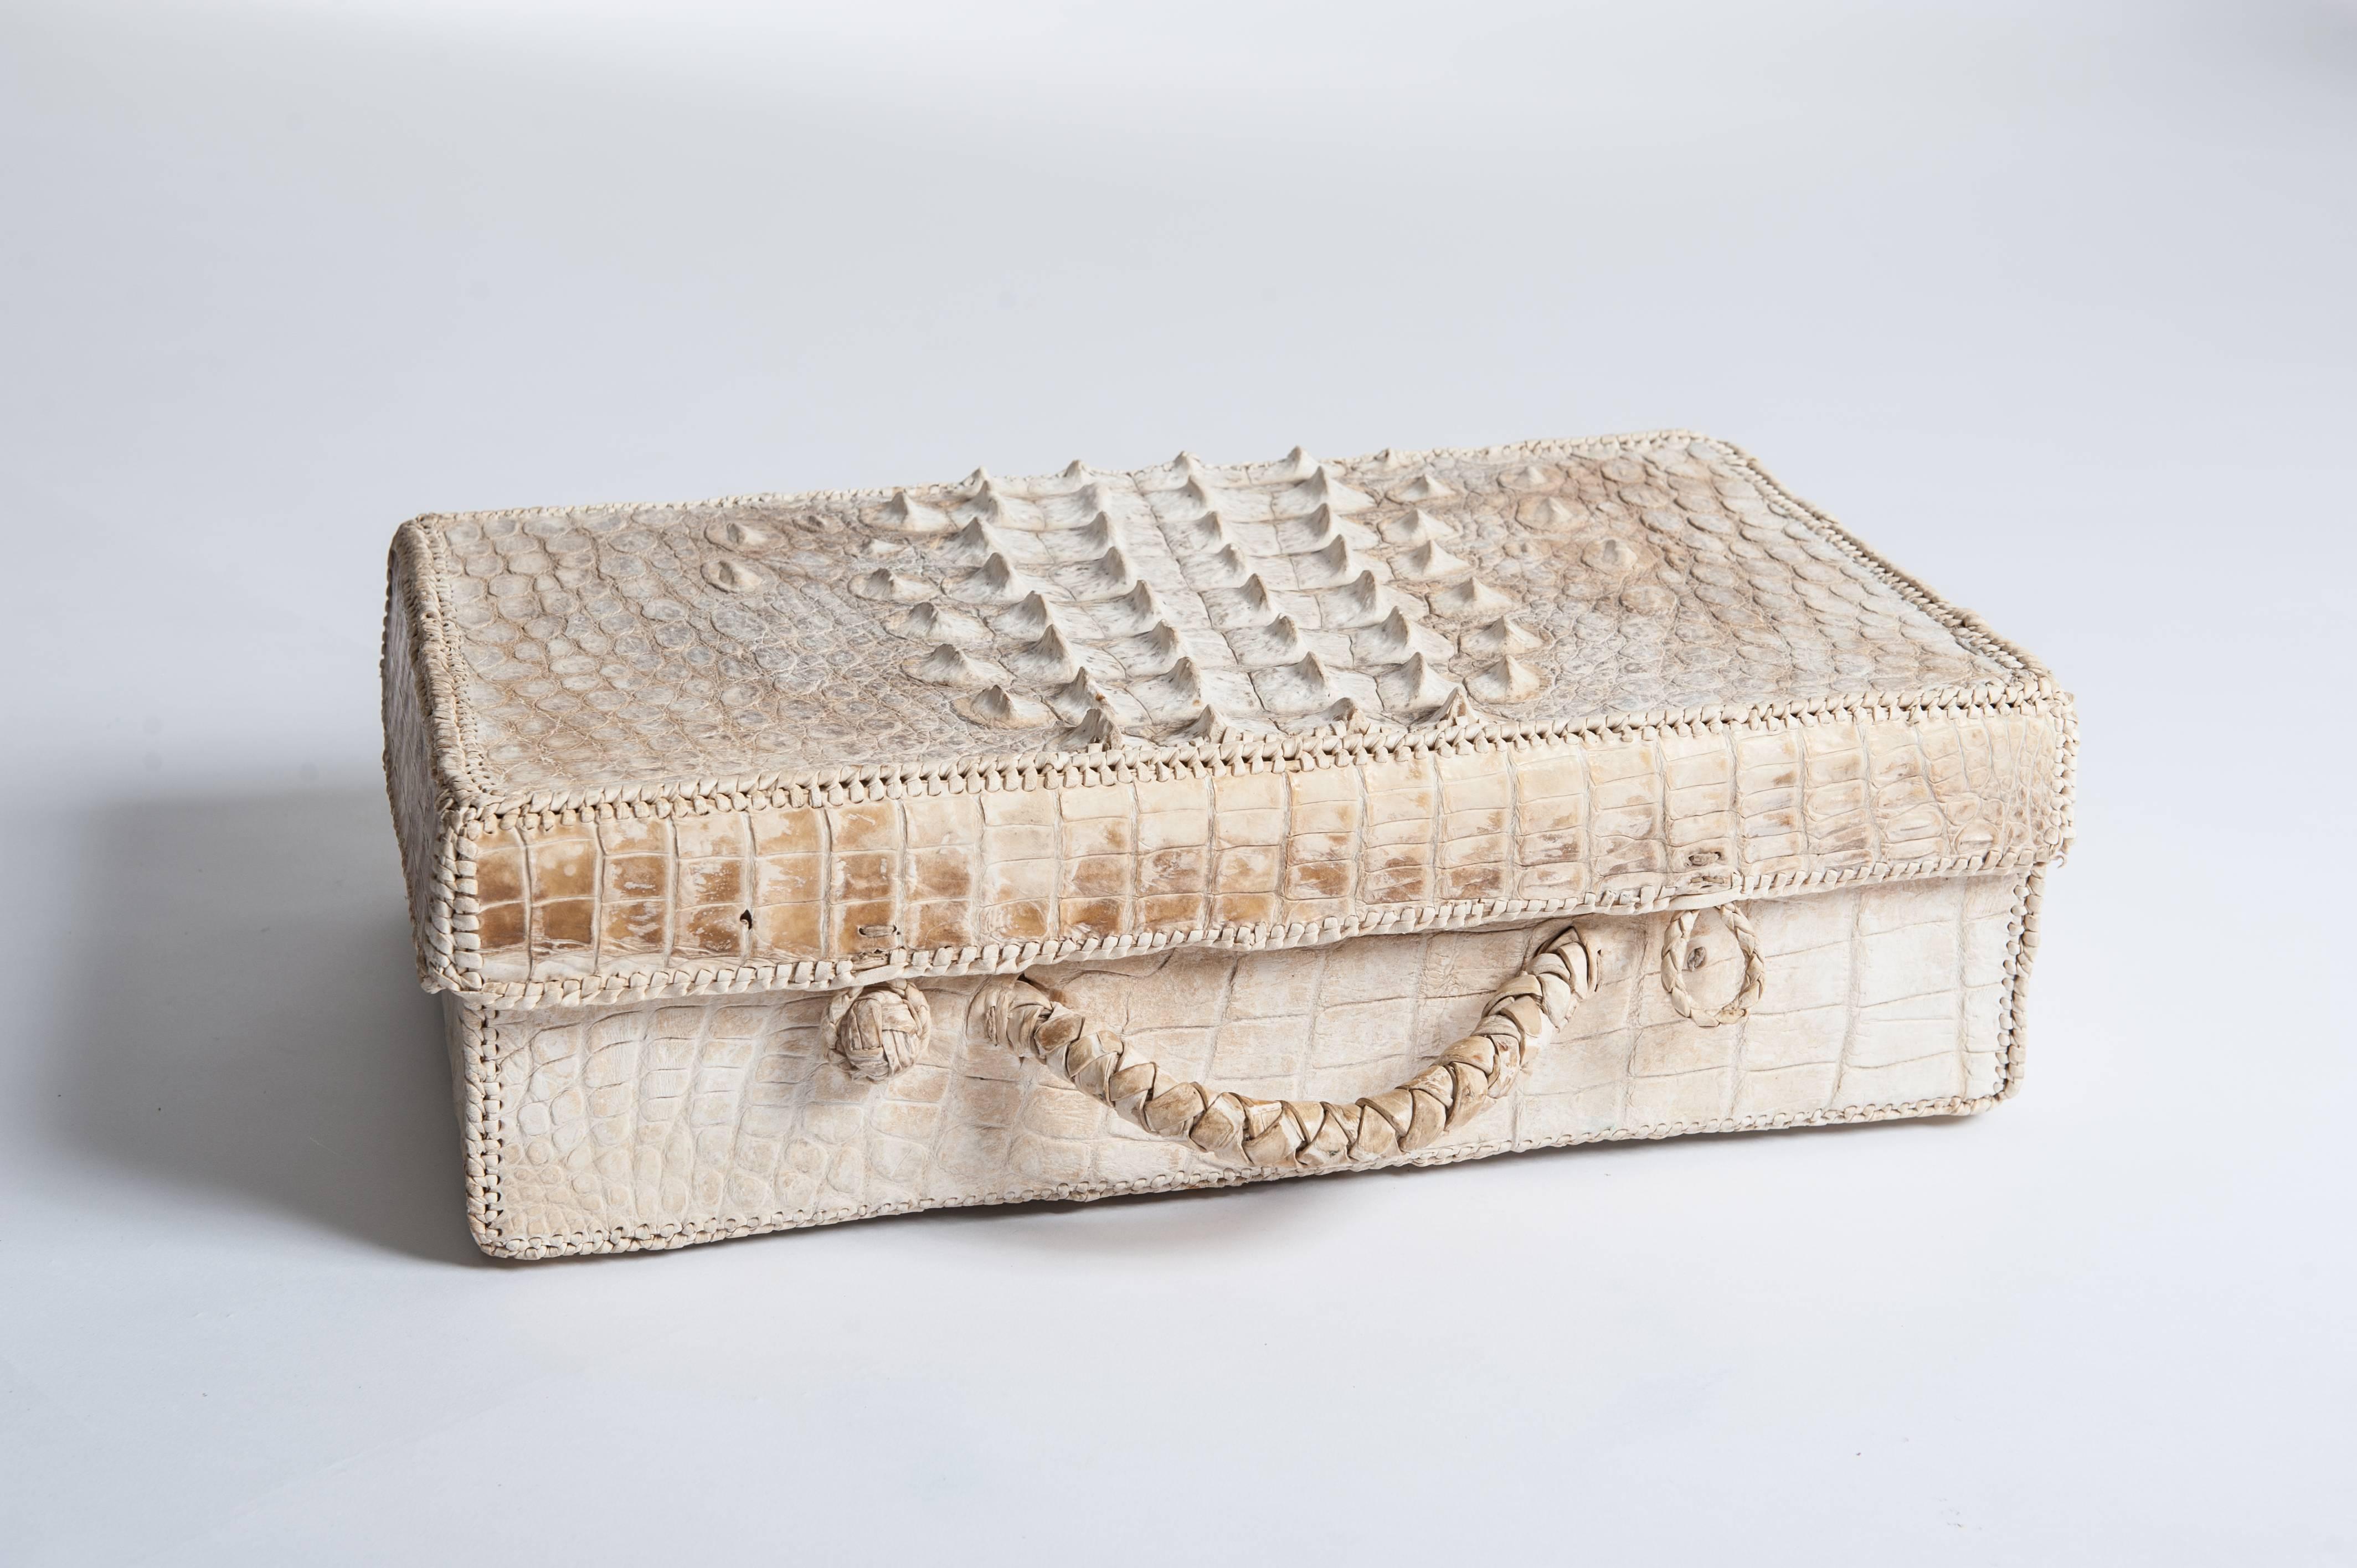 Außergewöhnliche handgefertigte Art Deco Picknicktasche aus Krokoleder mit Hornrücken.
Das Innere des Picknickkoffers ist nicht mehr vorhanden.
Das Objekt ist von Hand zusammengenäht und mit einem feinen Lederband in Creme und Weiß eingefasst,
auch